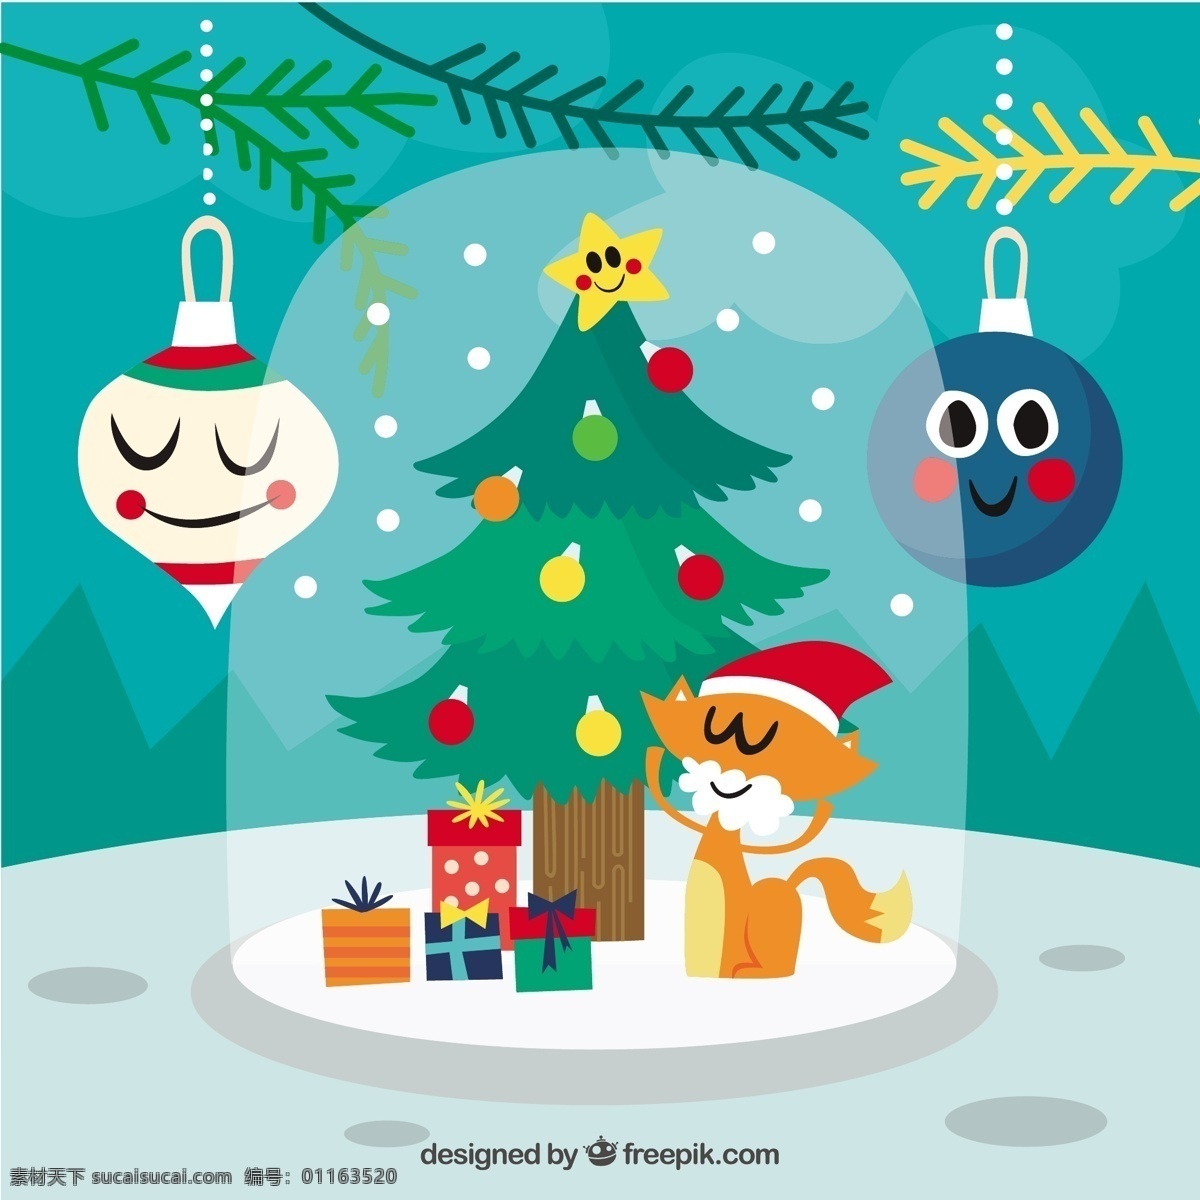 圣诞 装饰 背景 小猫 戴 圣诞老人 克劳斯 配件 圣诞树 一方面 猫 圣诞快乐 冬天 圣诞背景 可爱的圣诞节 装修 文化背景 寒冷 假期